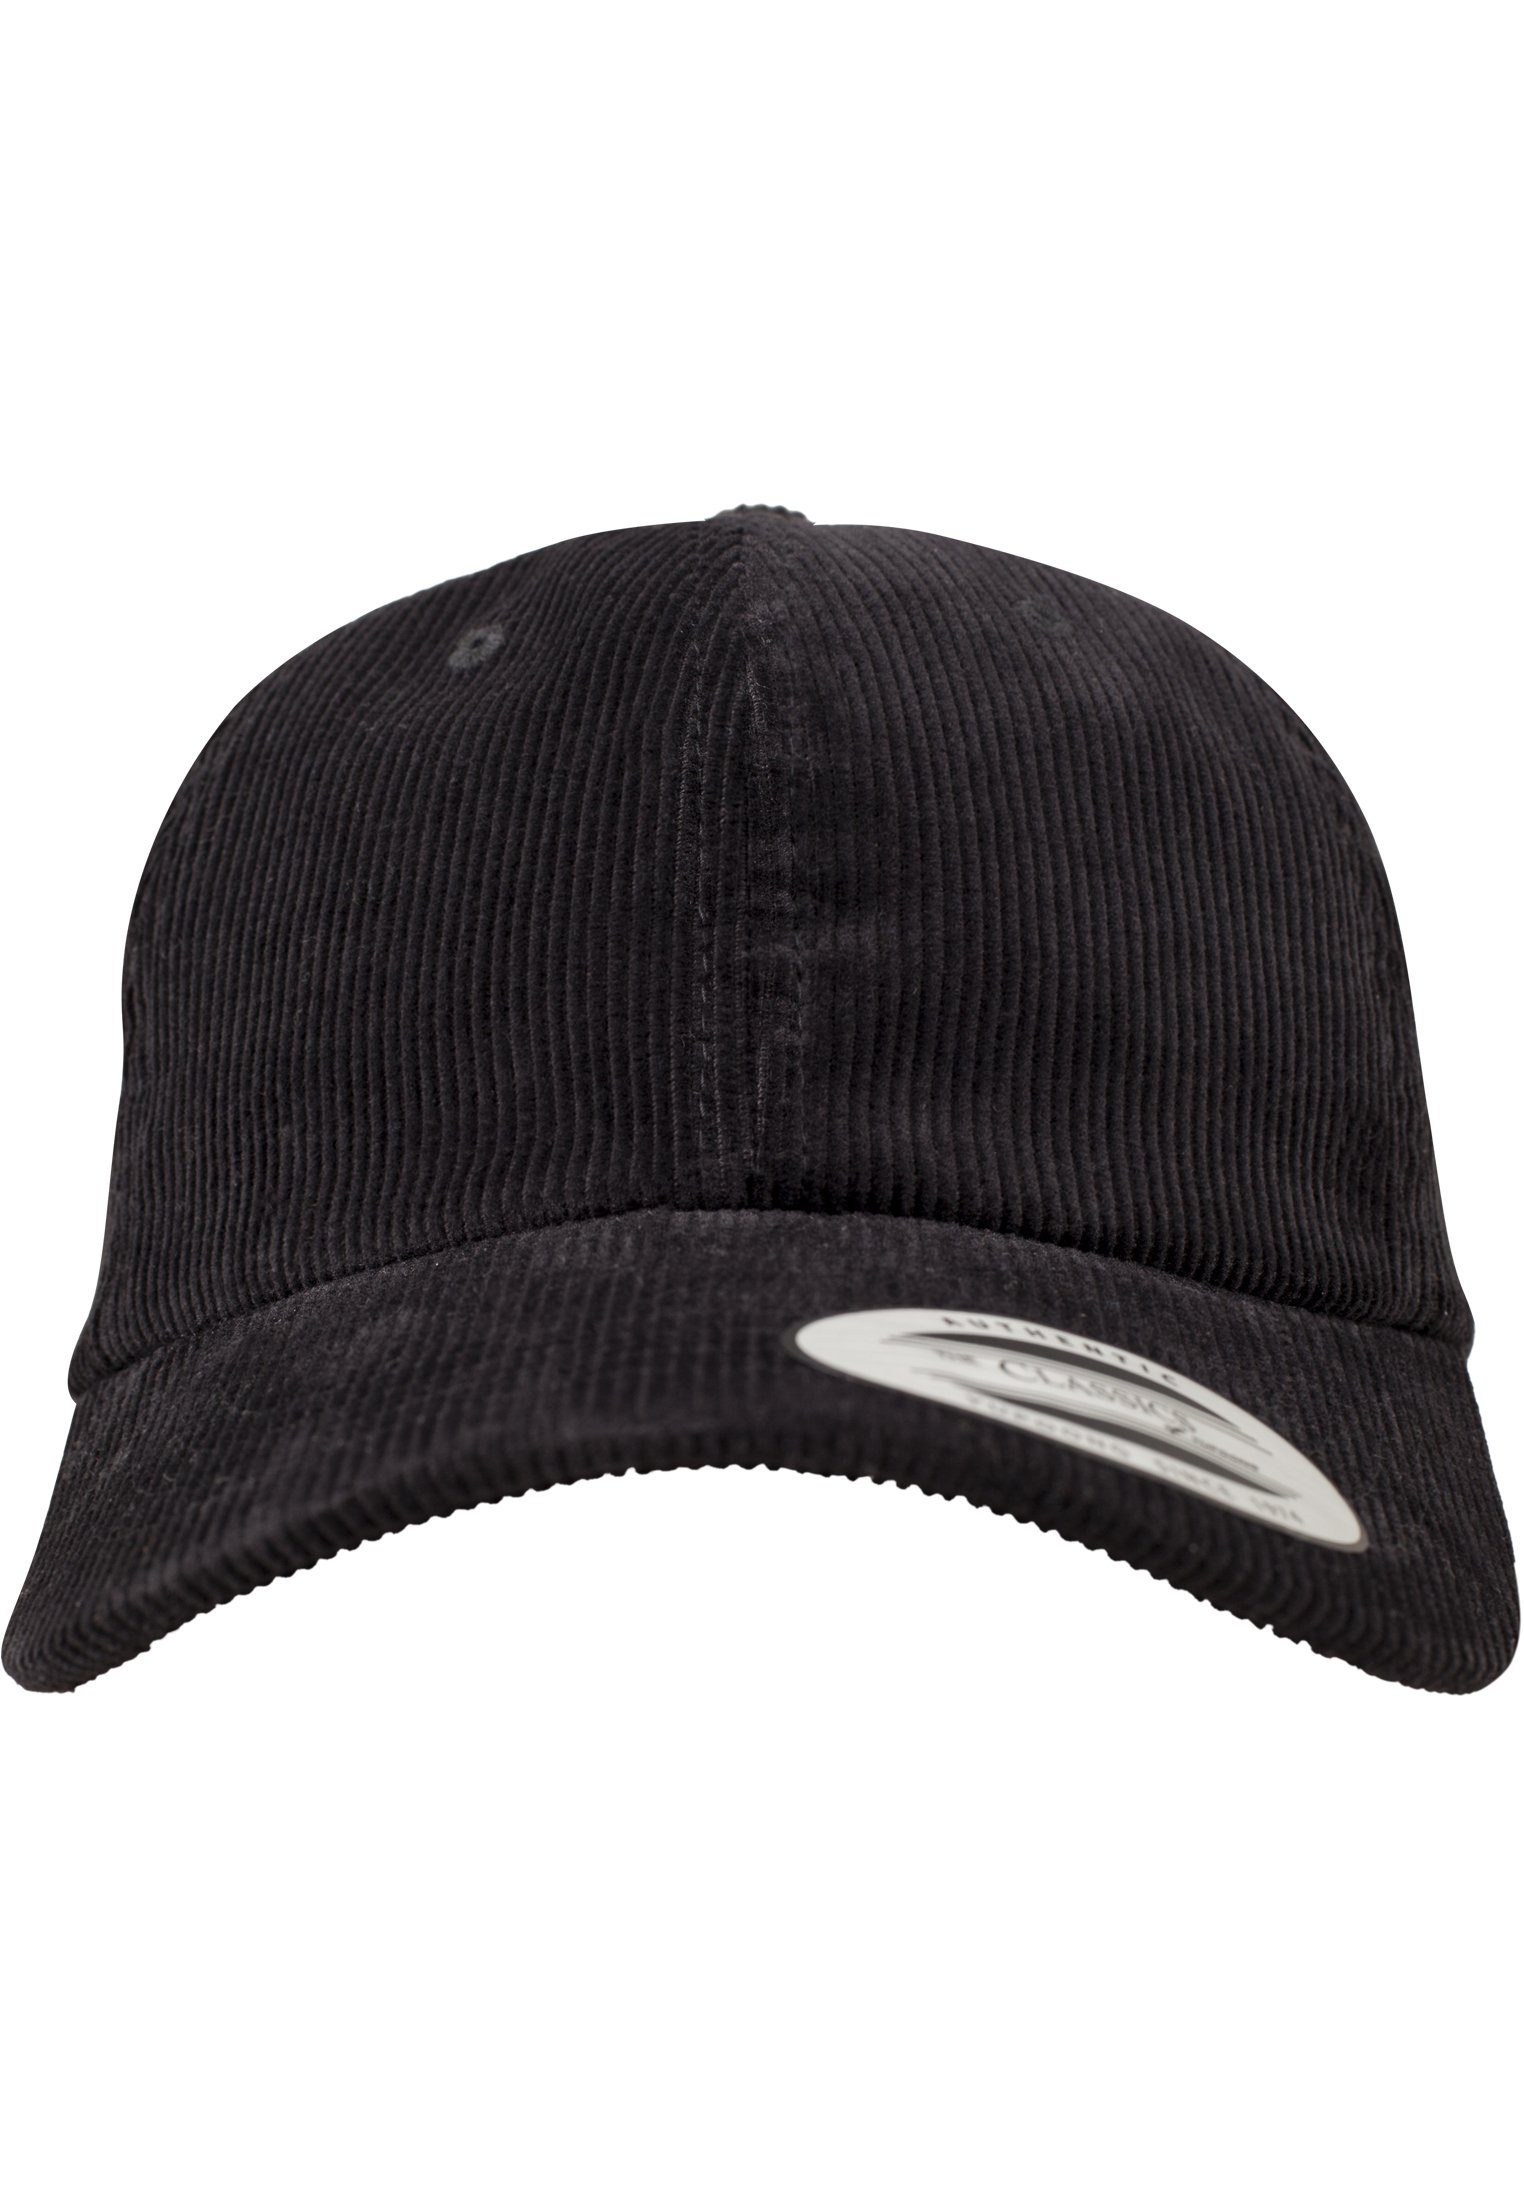 black Flexfit Cap Cap Dad Corduroy Accessoires Profile Low Flex